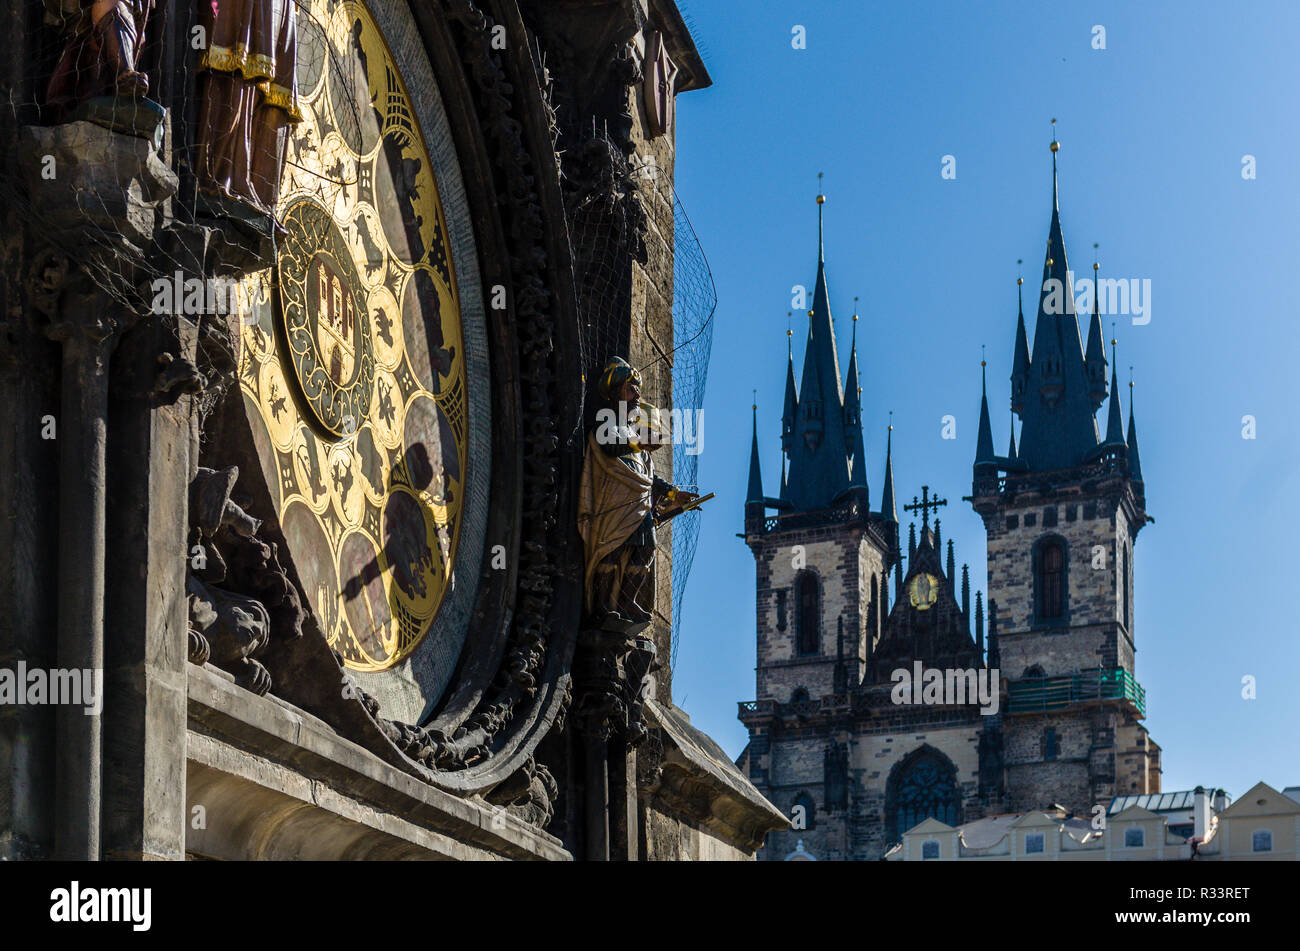 'Prazsky orloj', l'horloge astronomique de Prague's town hall, avec les tours de 'Tynsky chram', l'église Tyn, dans l'arrière-plan Banque D'Images